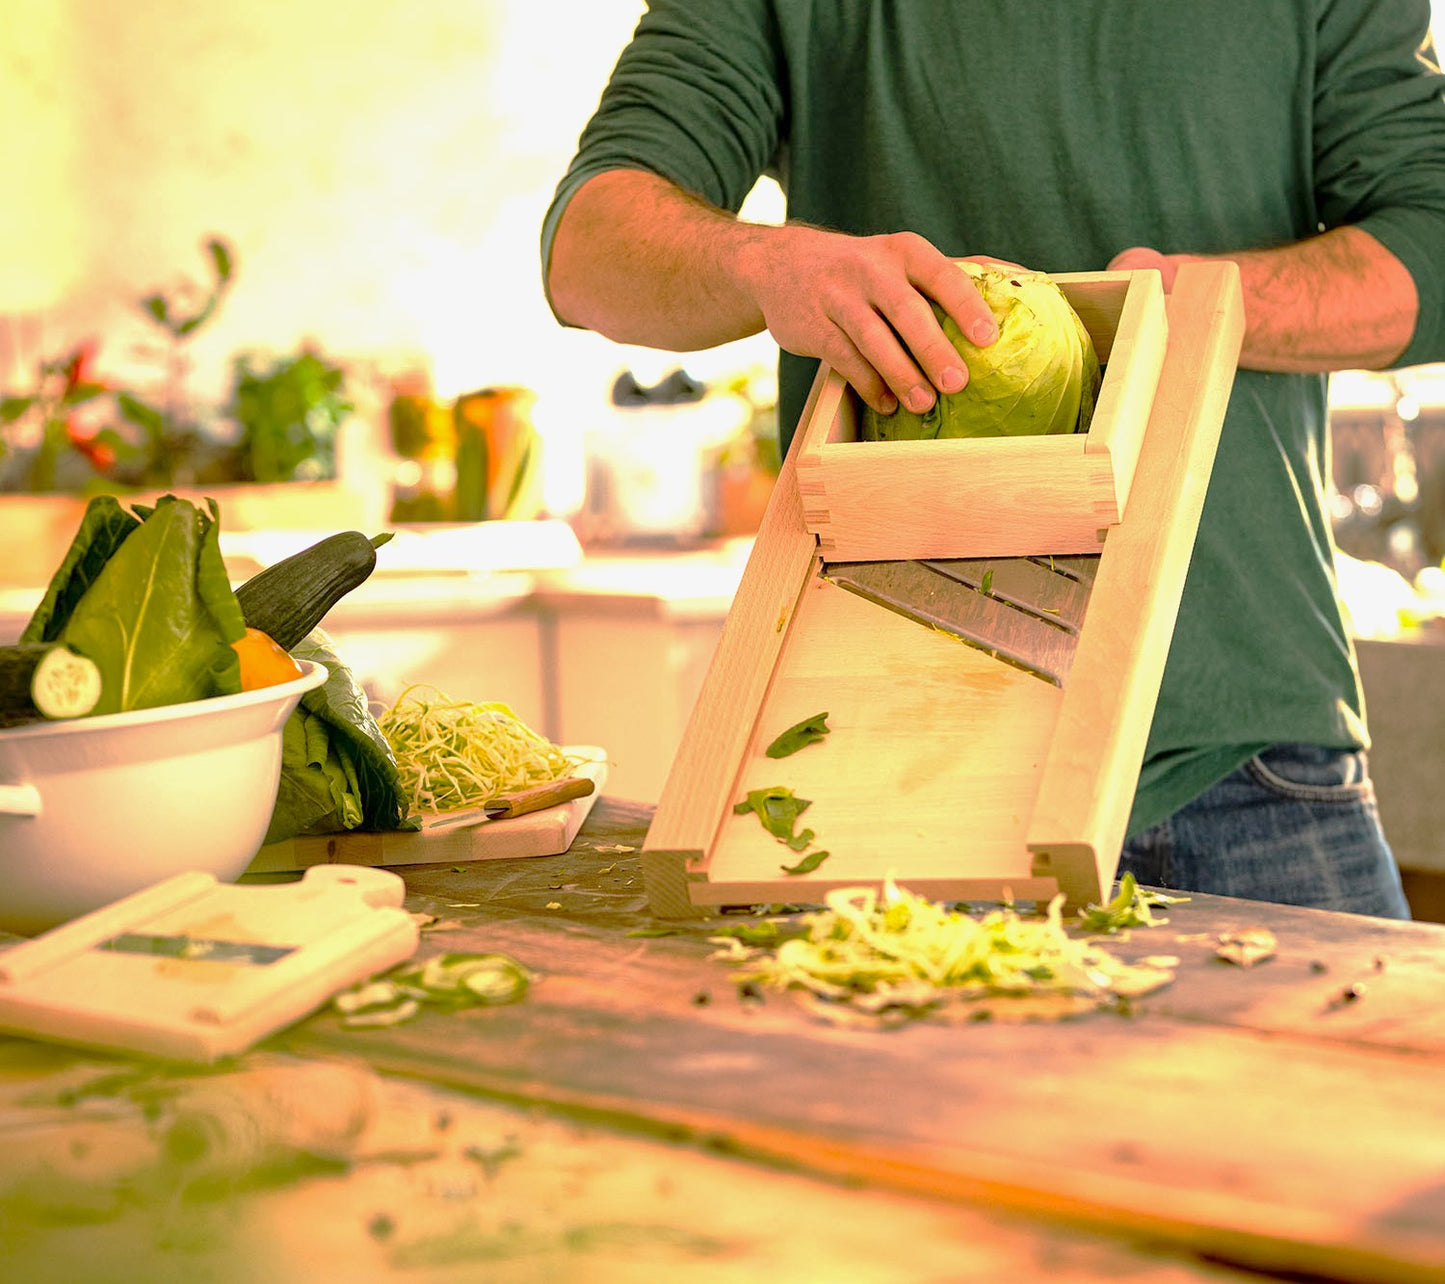 Sternsteiger vegetable slicer vegetable slicer cabbage slicer wood 4 knives 